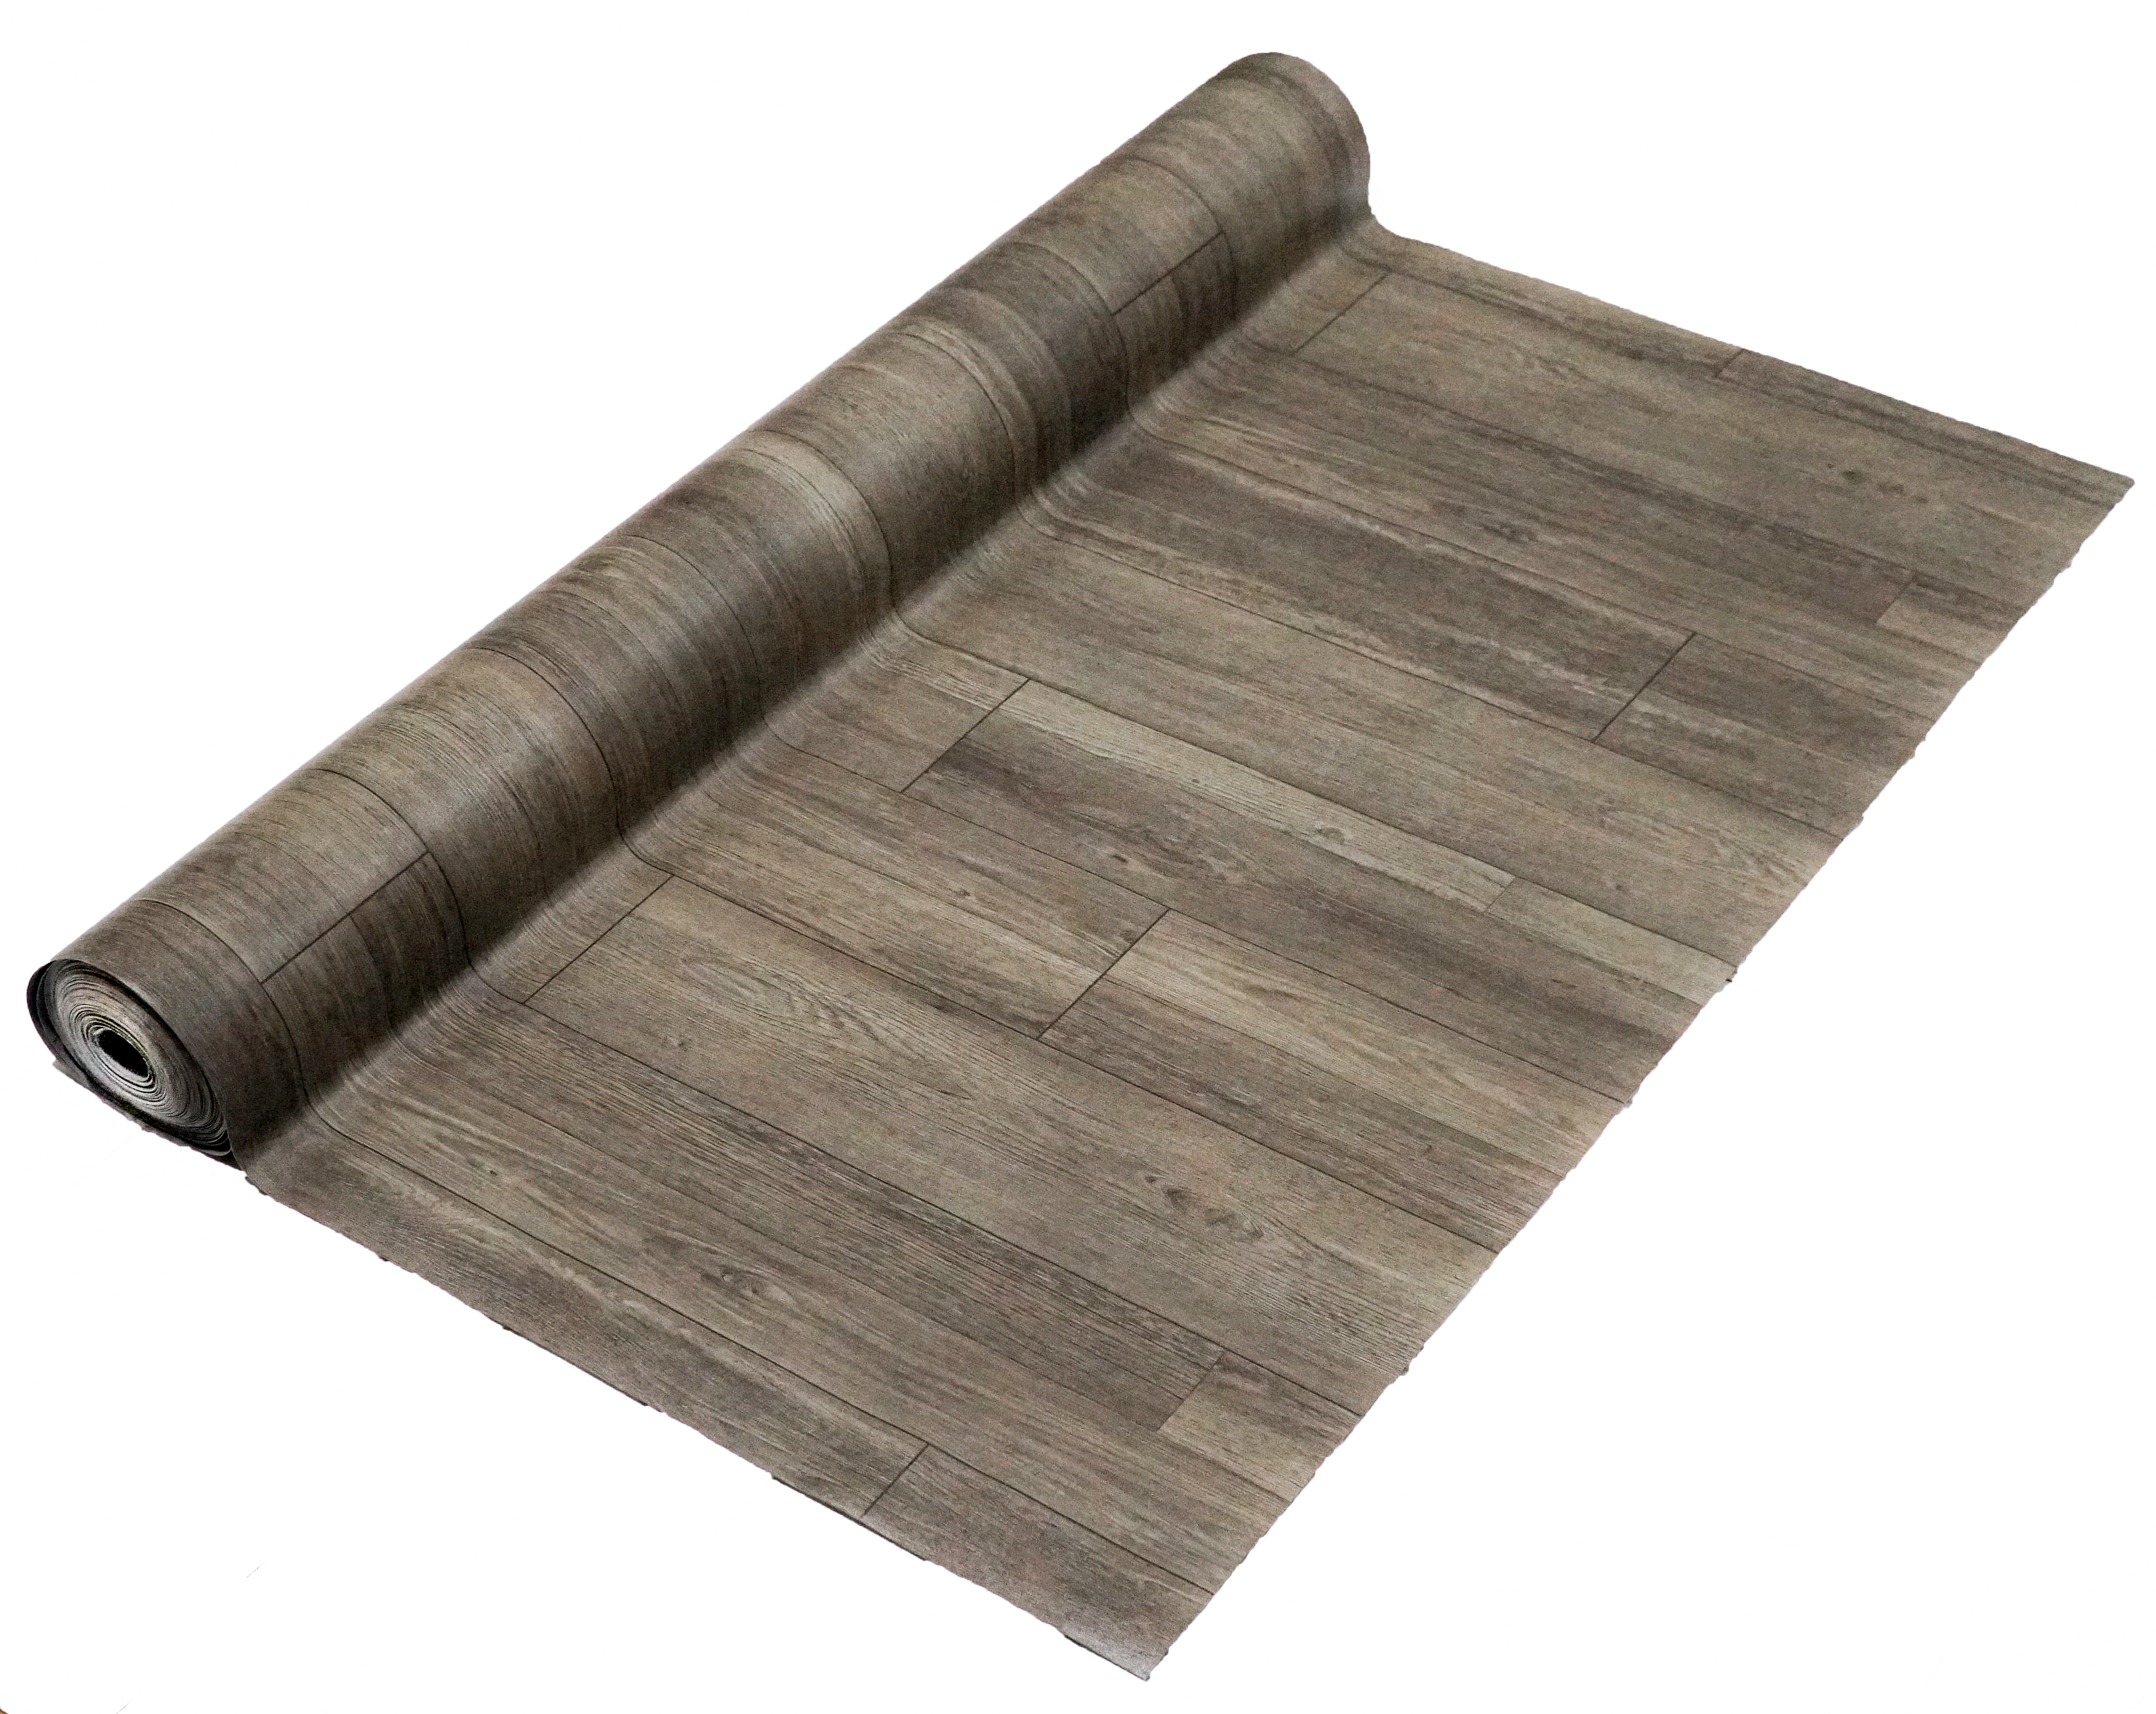 Thảm nhựa simili trải sàn vân gỗ màu xám siêu bền, chống tuyệt đối nước